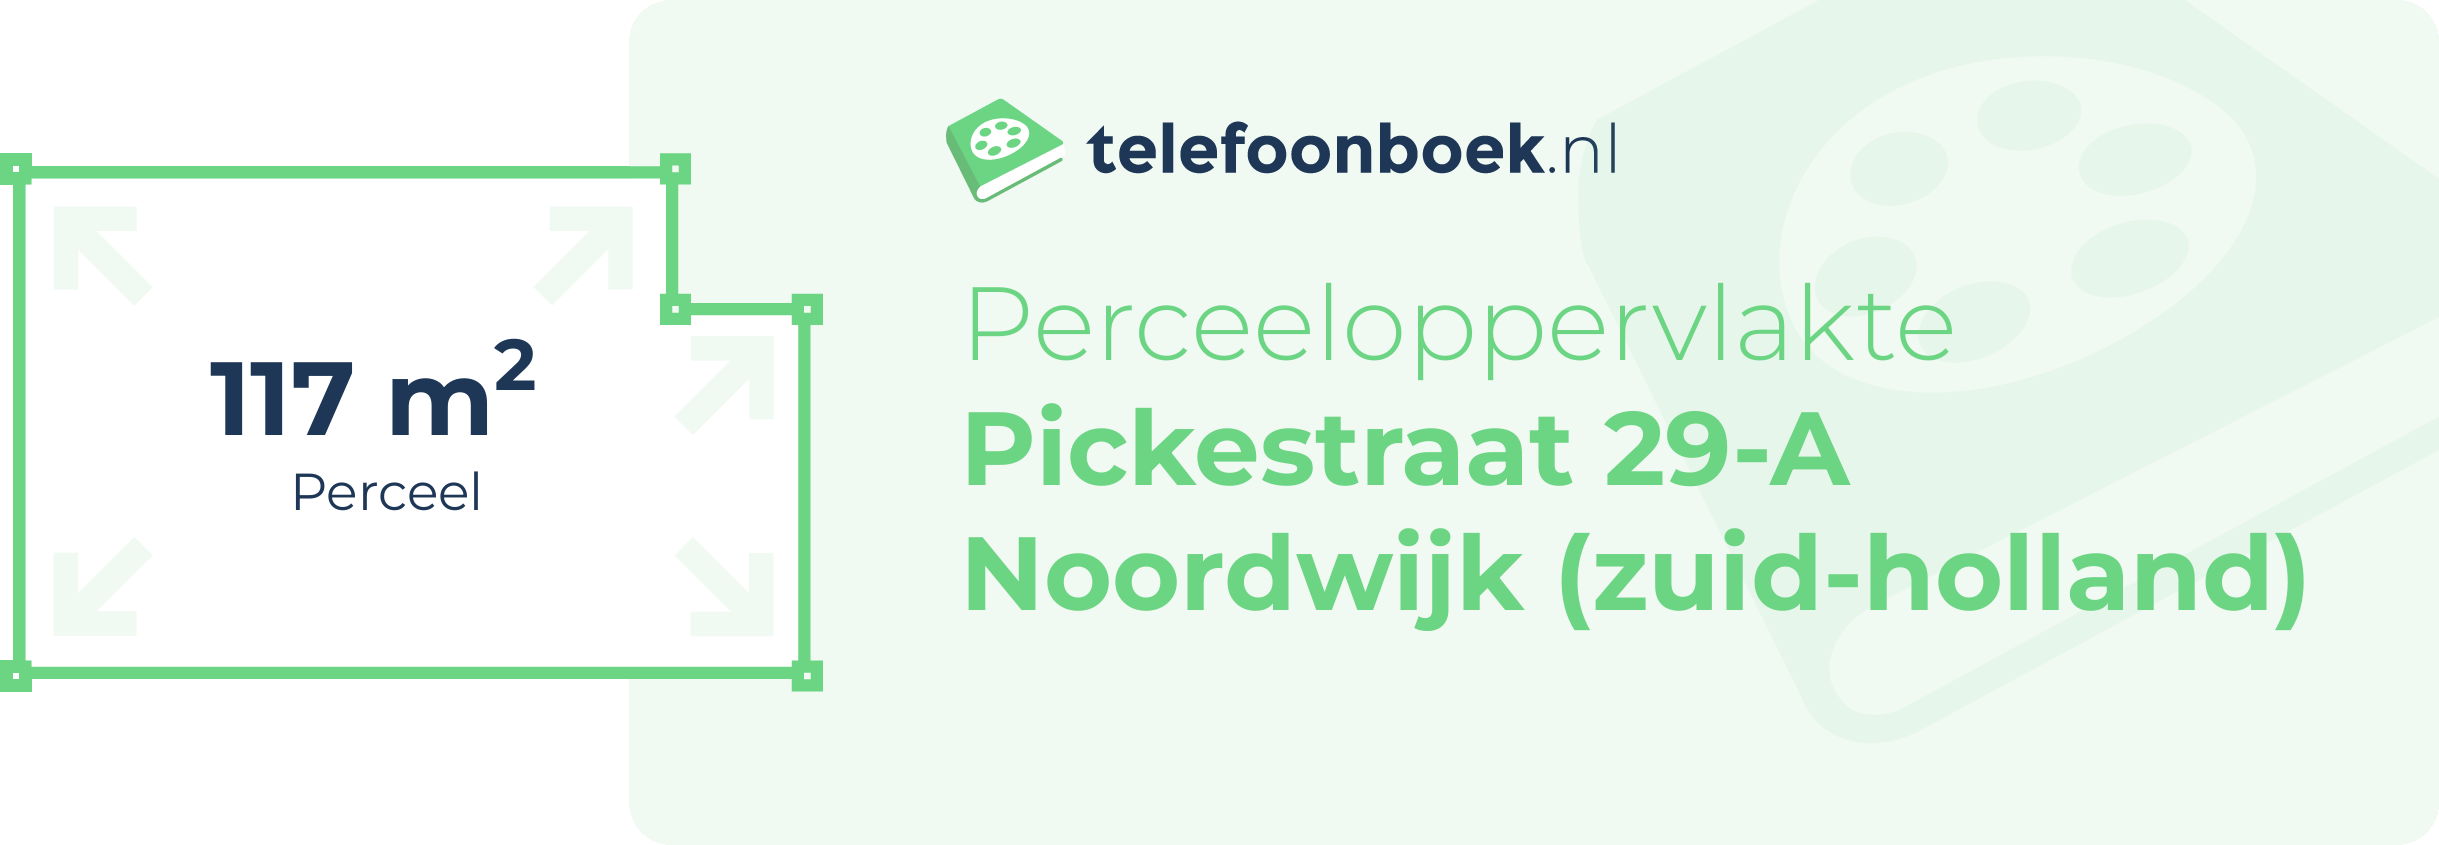 Perceeloppervlakte Pickestraat 29-A Noordwijk (Zuid-Holland)